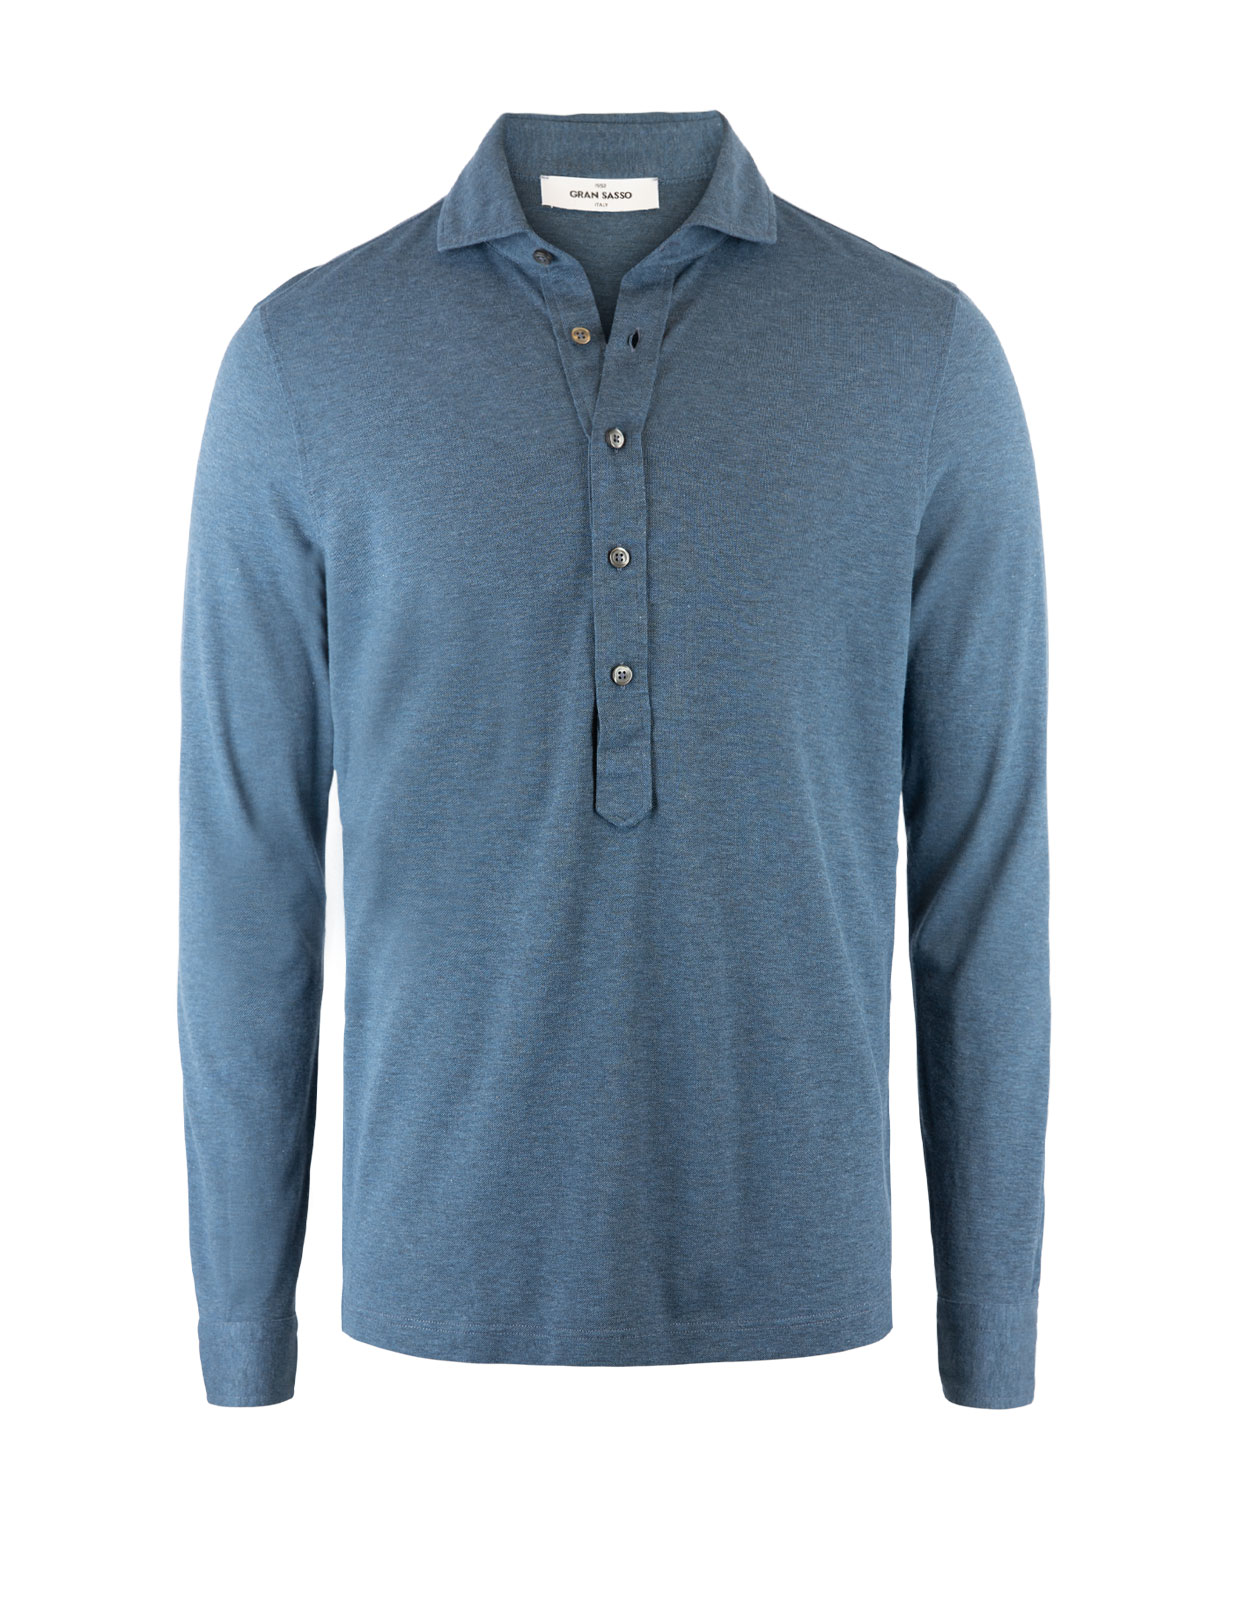 Jersey Popover Shirt Blue Melange Stl 50